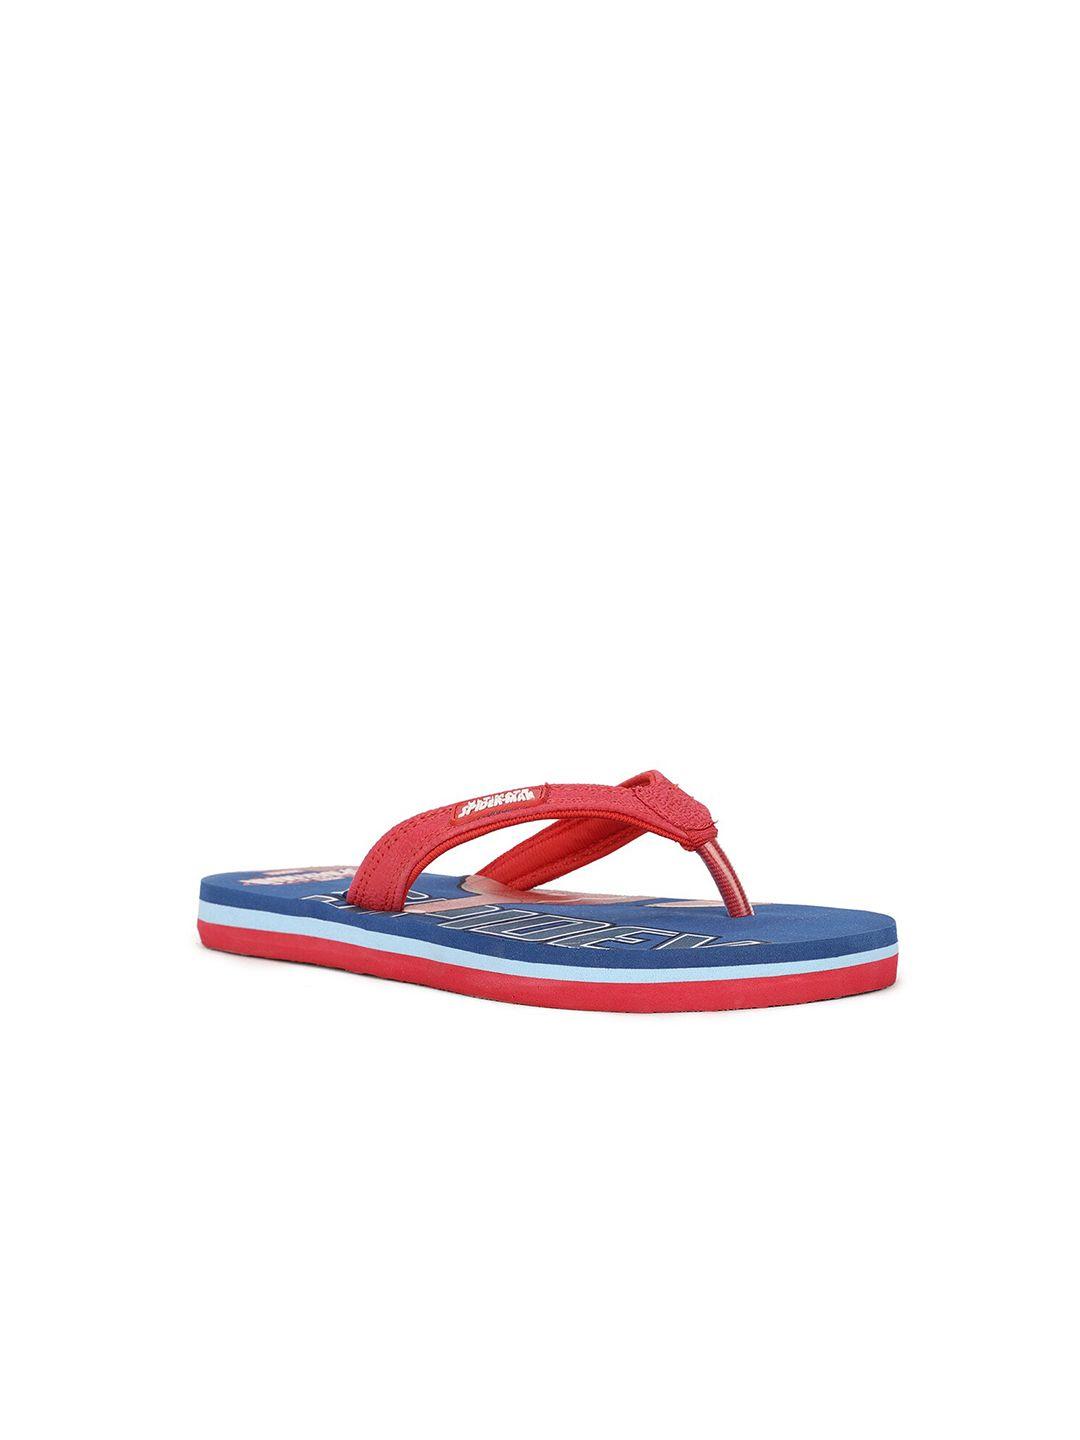 disney boys red & blue spiderman printed thong flip-flops